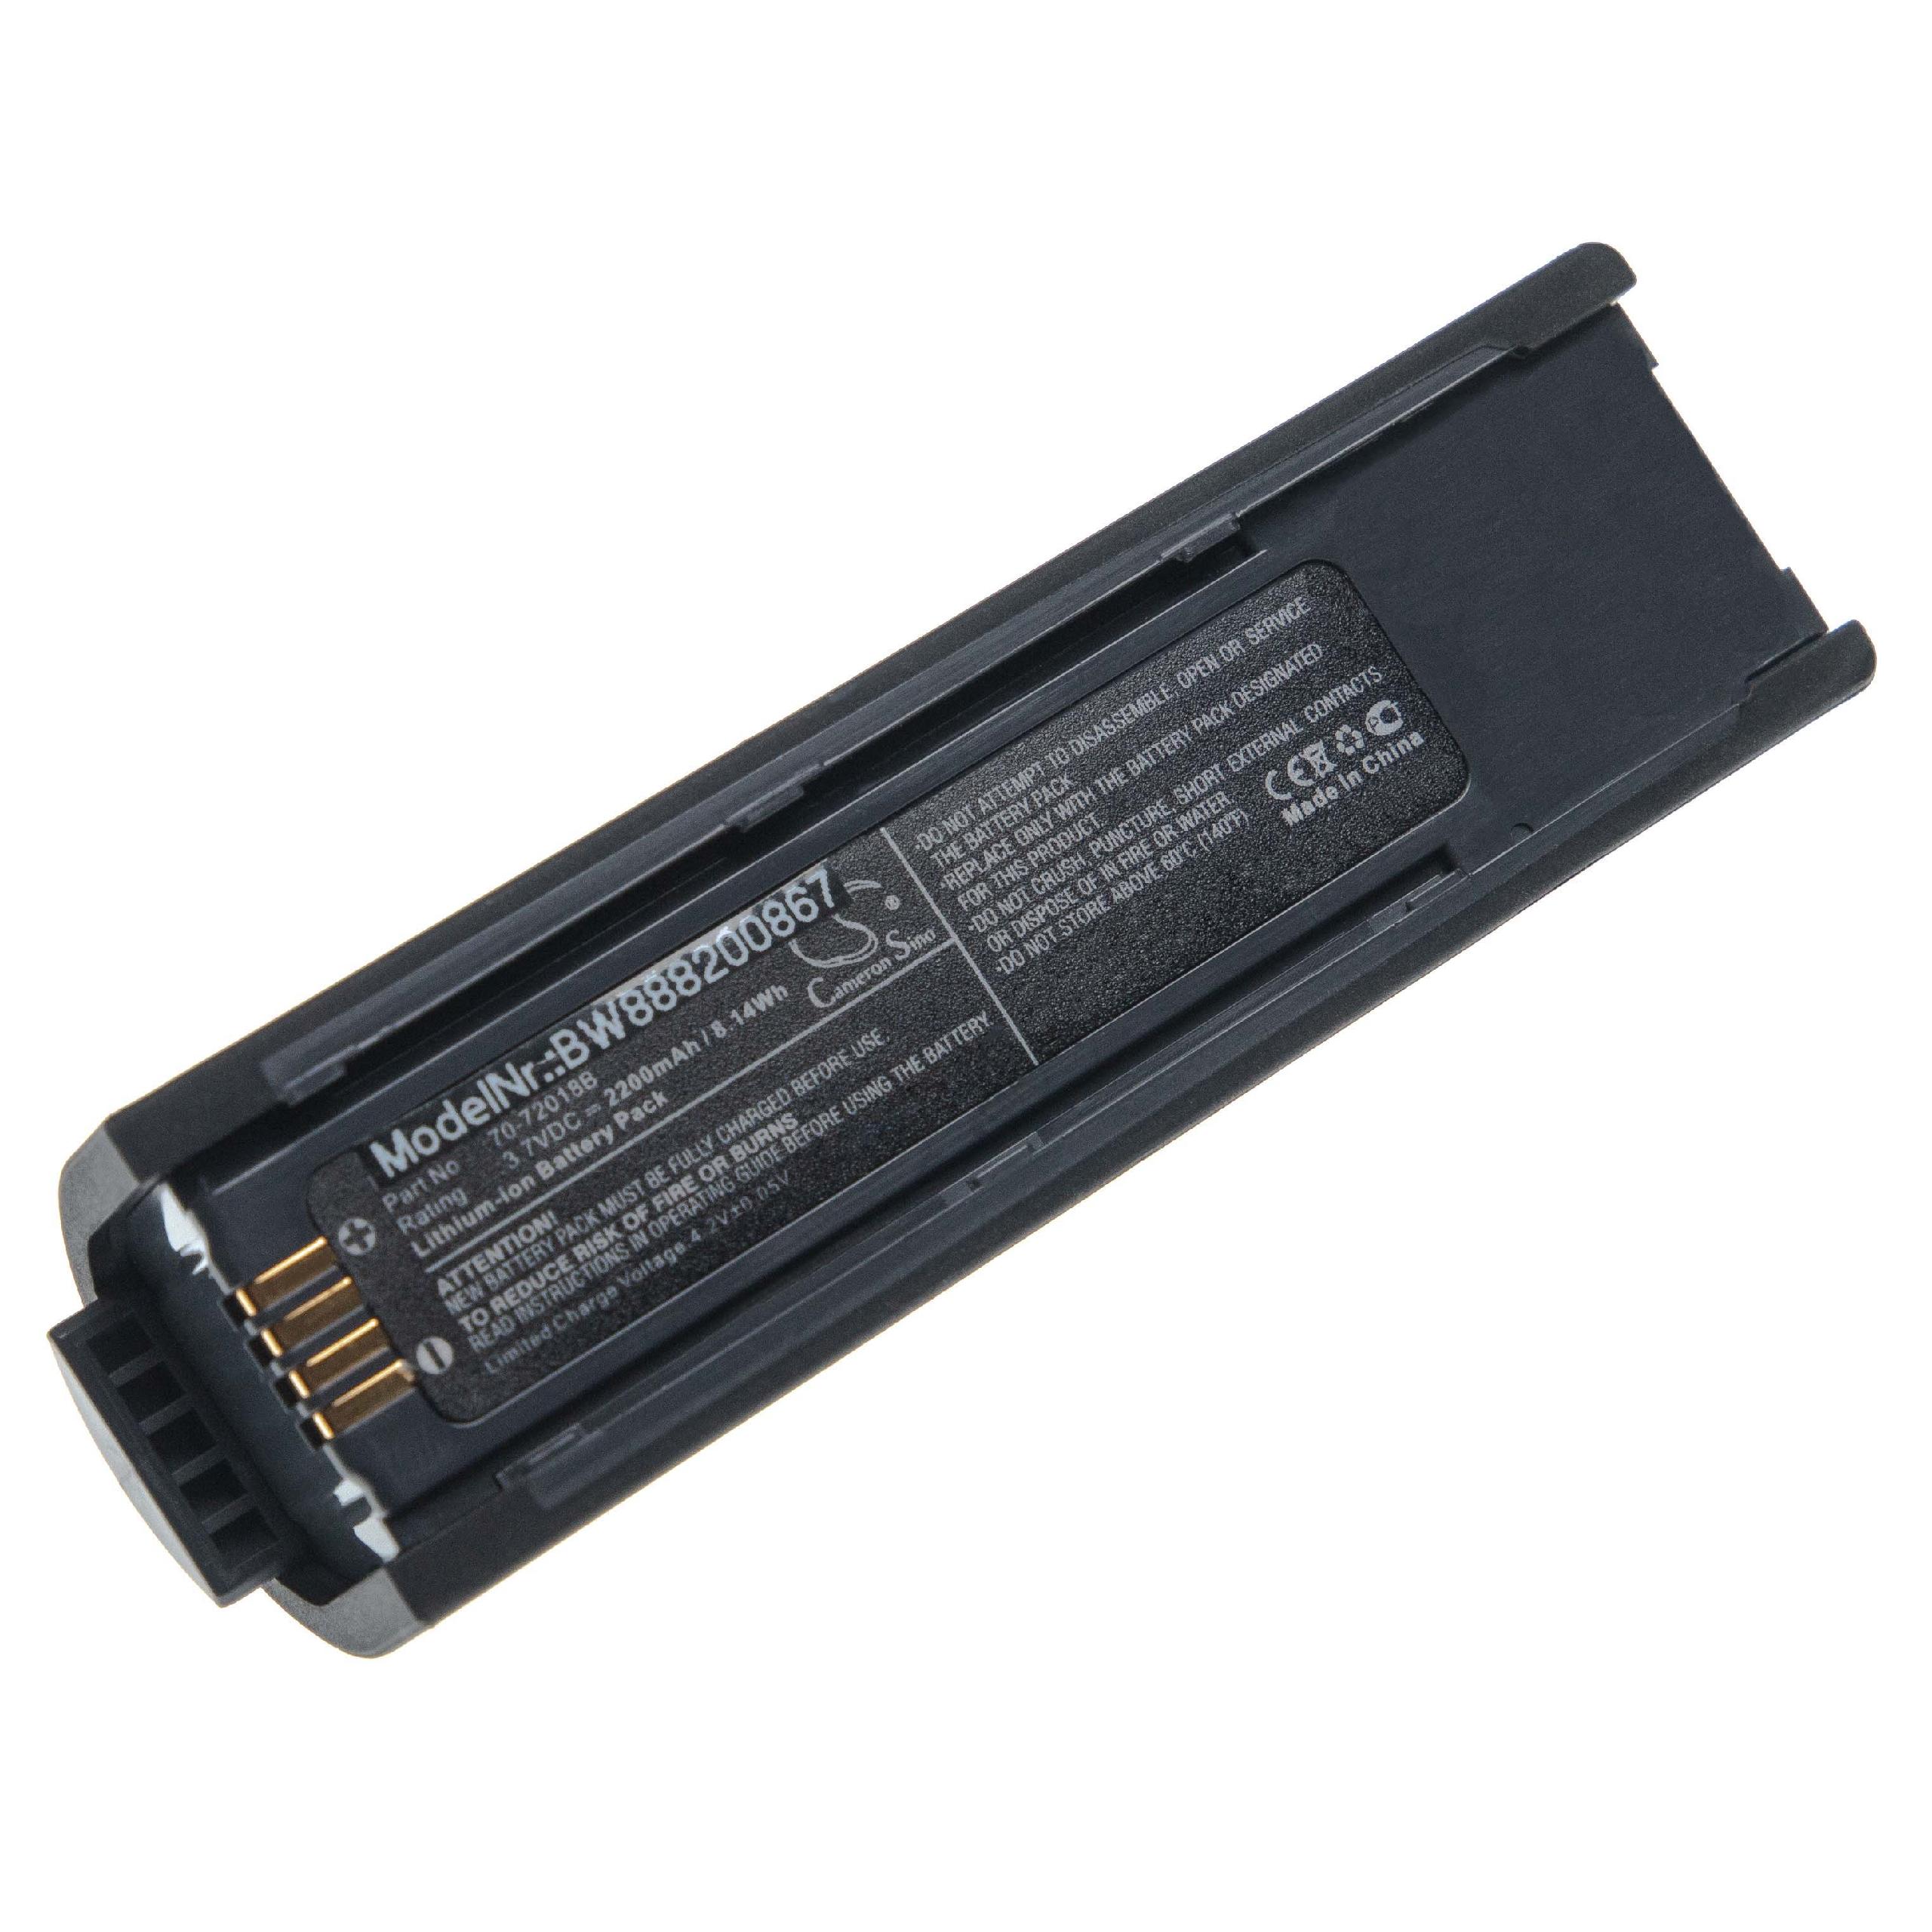 Akumulator do czytnika kodów kreskowych zamiennik Metrologic 46-00358, 70-72018 - 2200 mAh 3,7 V Li-Ion